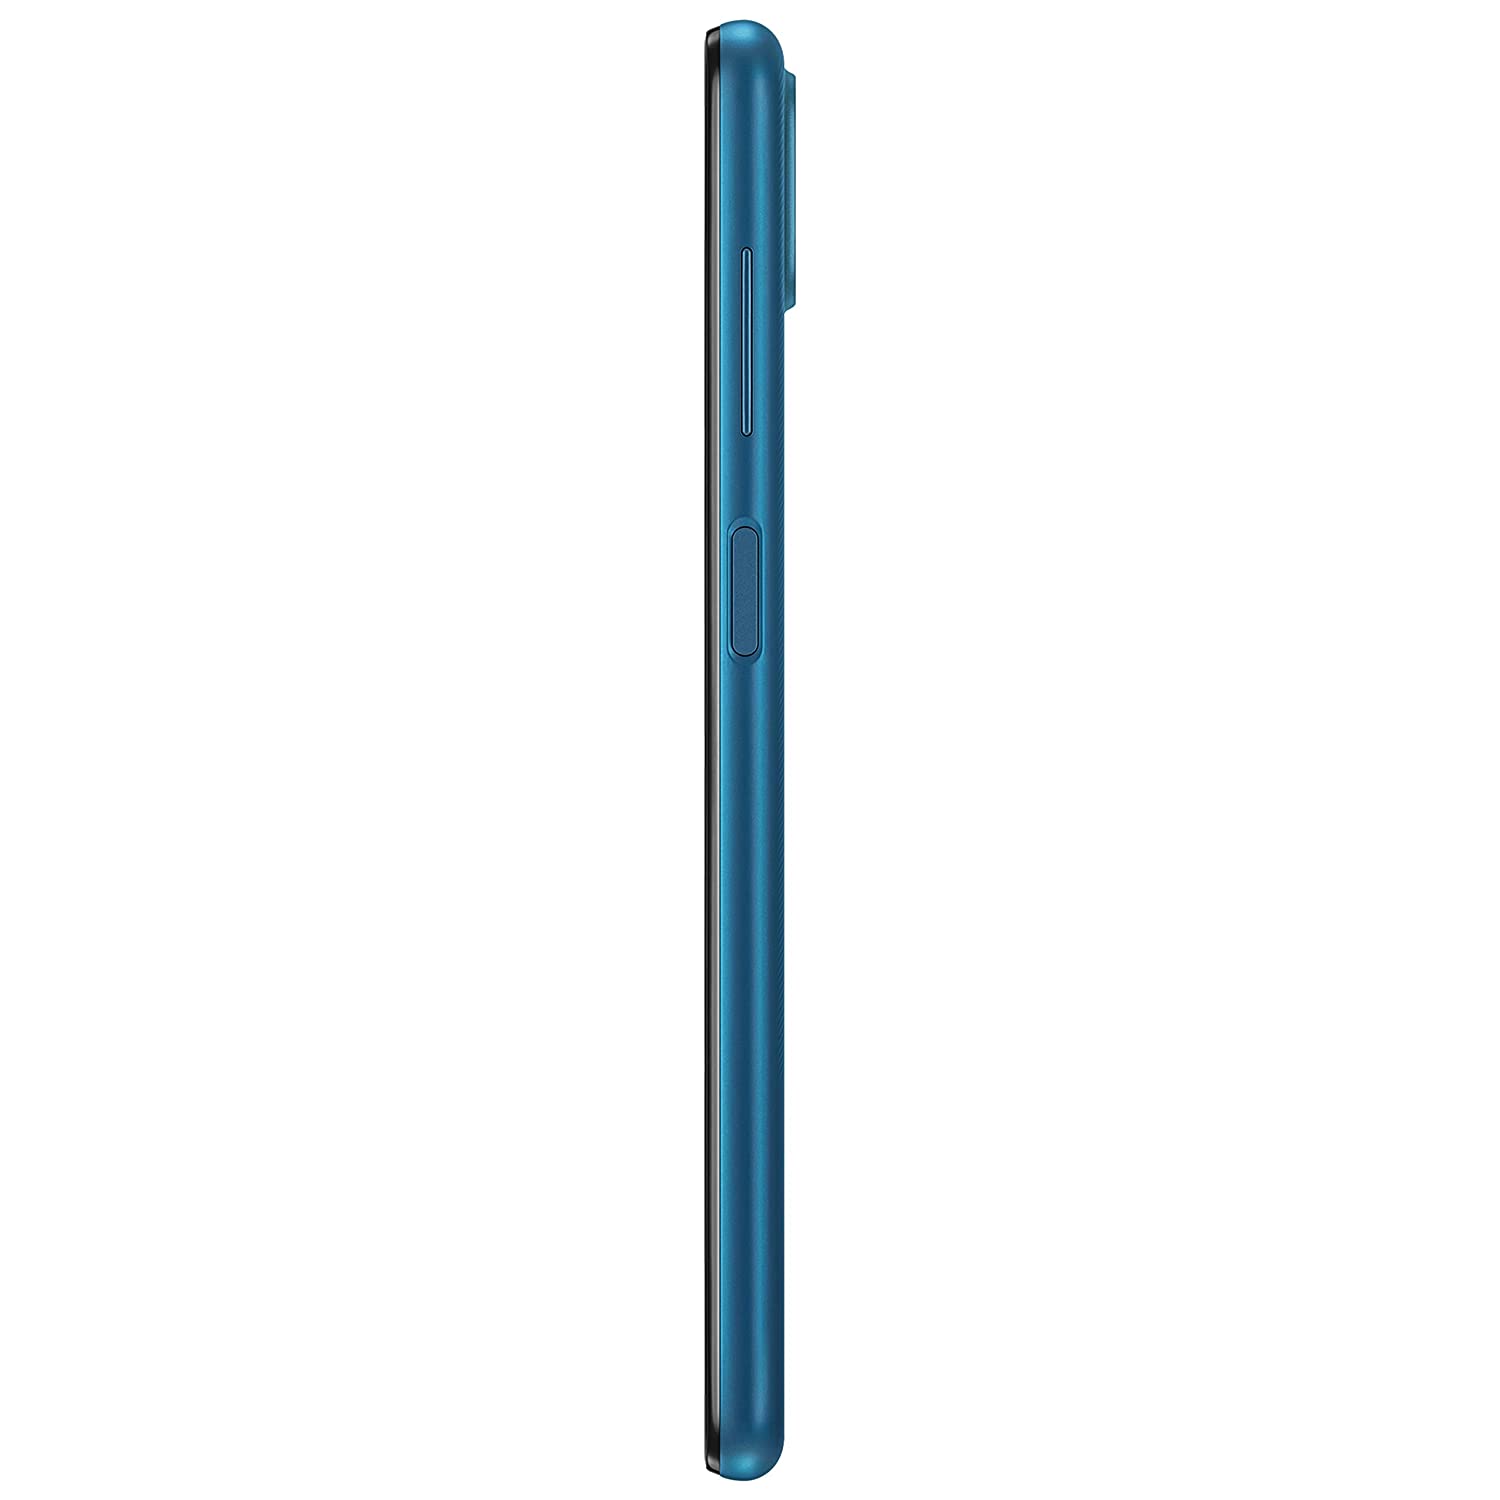 SAMSUNG Galaxy M12 (Blue, 128 GB)  (6 GB RAM)